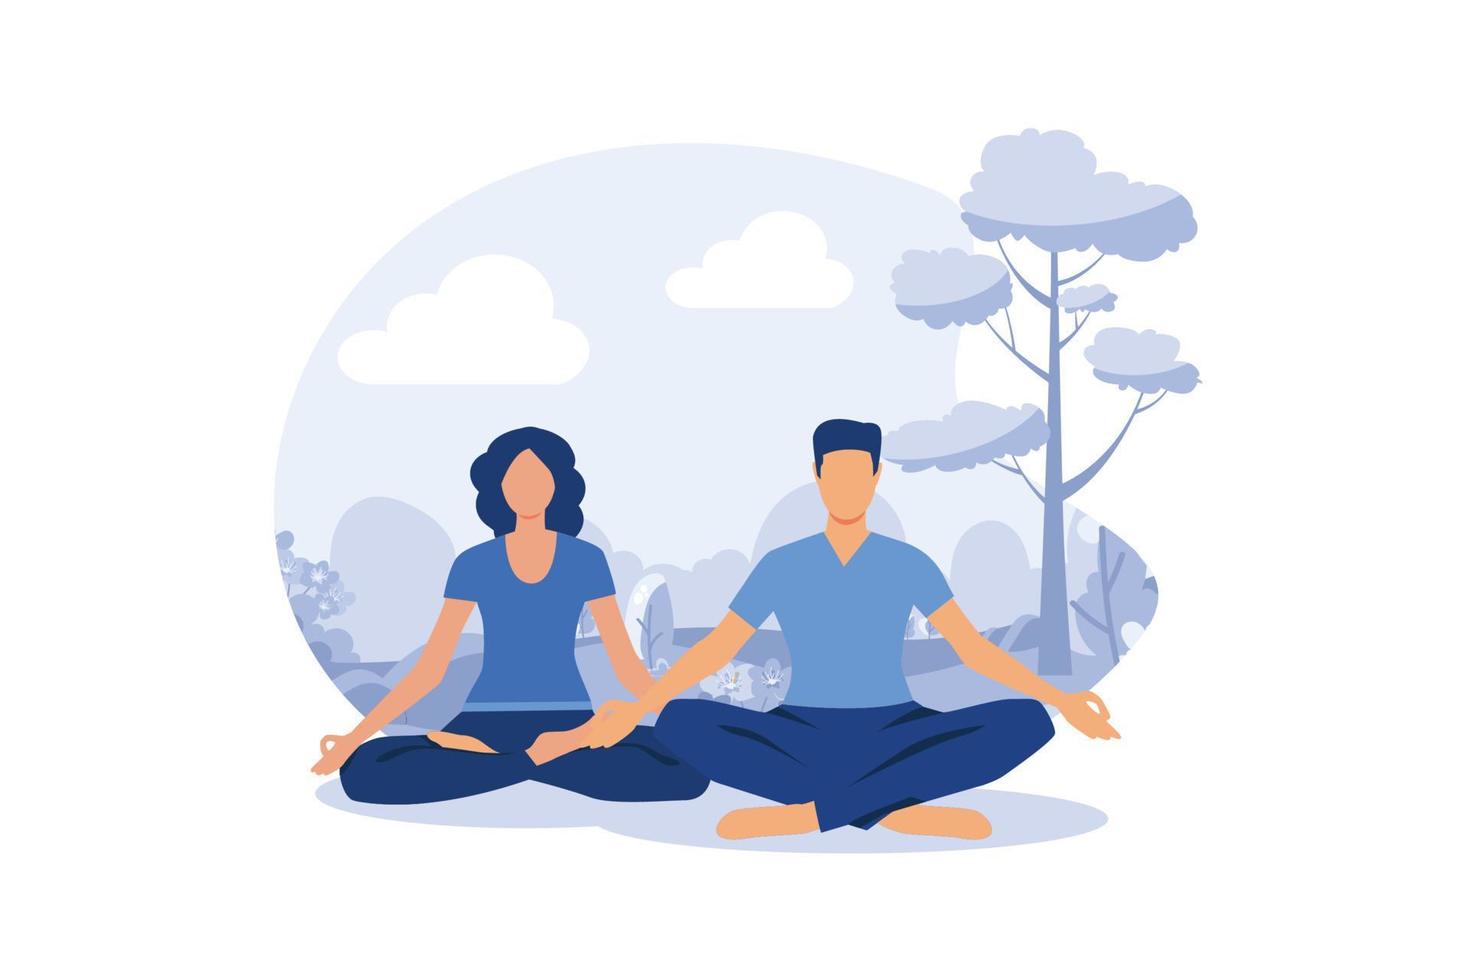 beneficios para la salud del yoga del cuerpo, la mente y las emociones, una mujer embarazada con su pareja en una pose de yoga medita. ilustración moderna de diseño plano vector